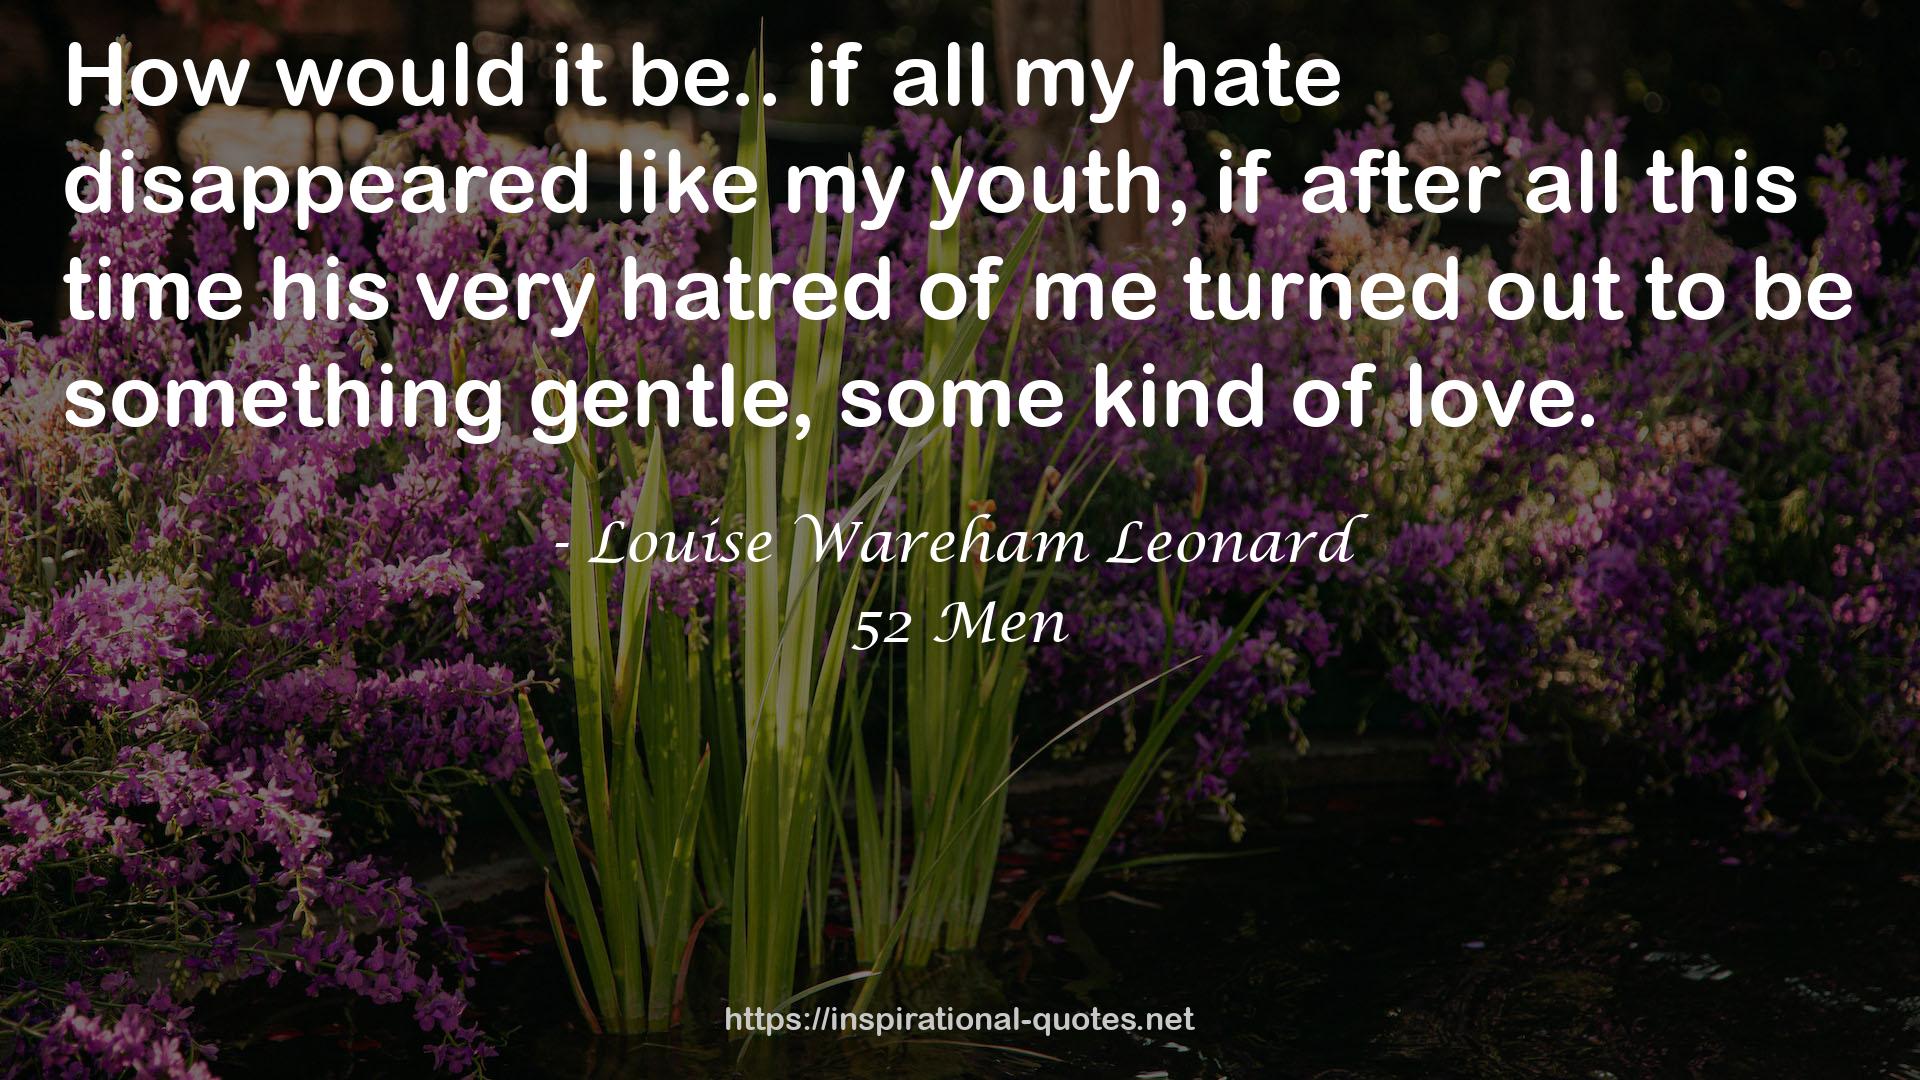 Louise Wareham Leonard QUOTES